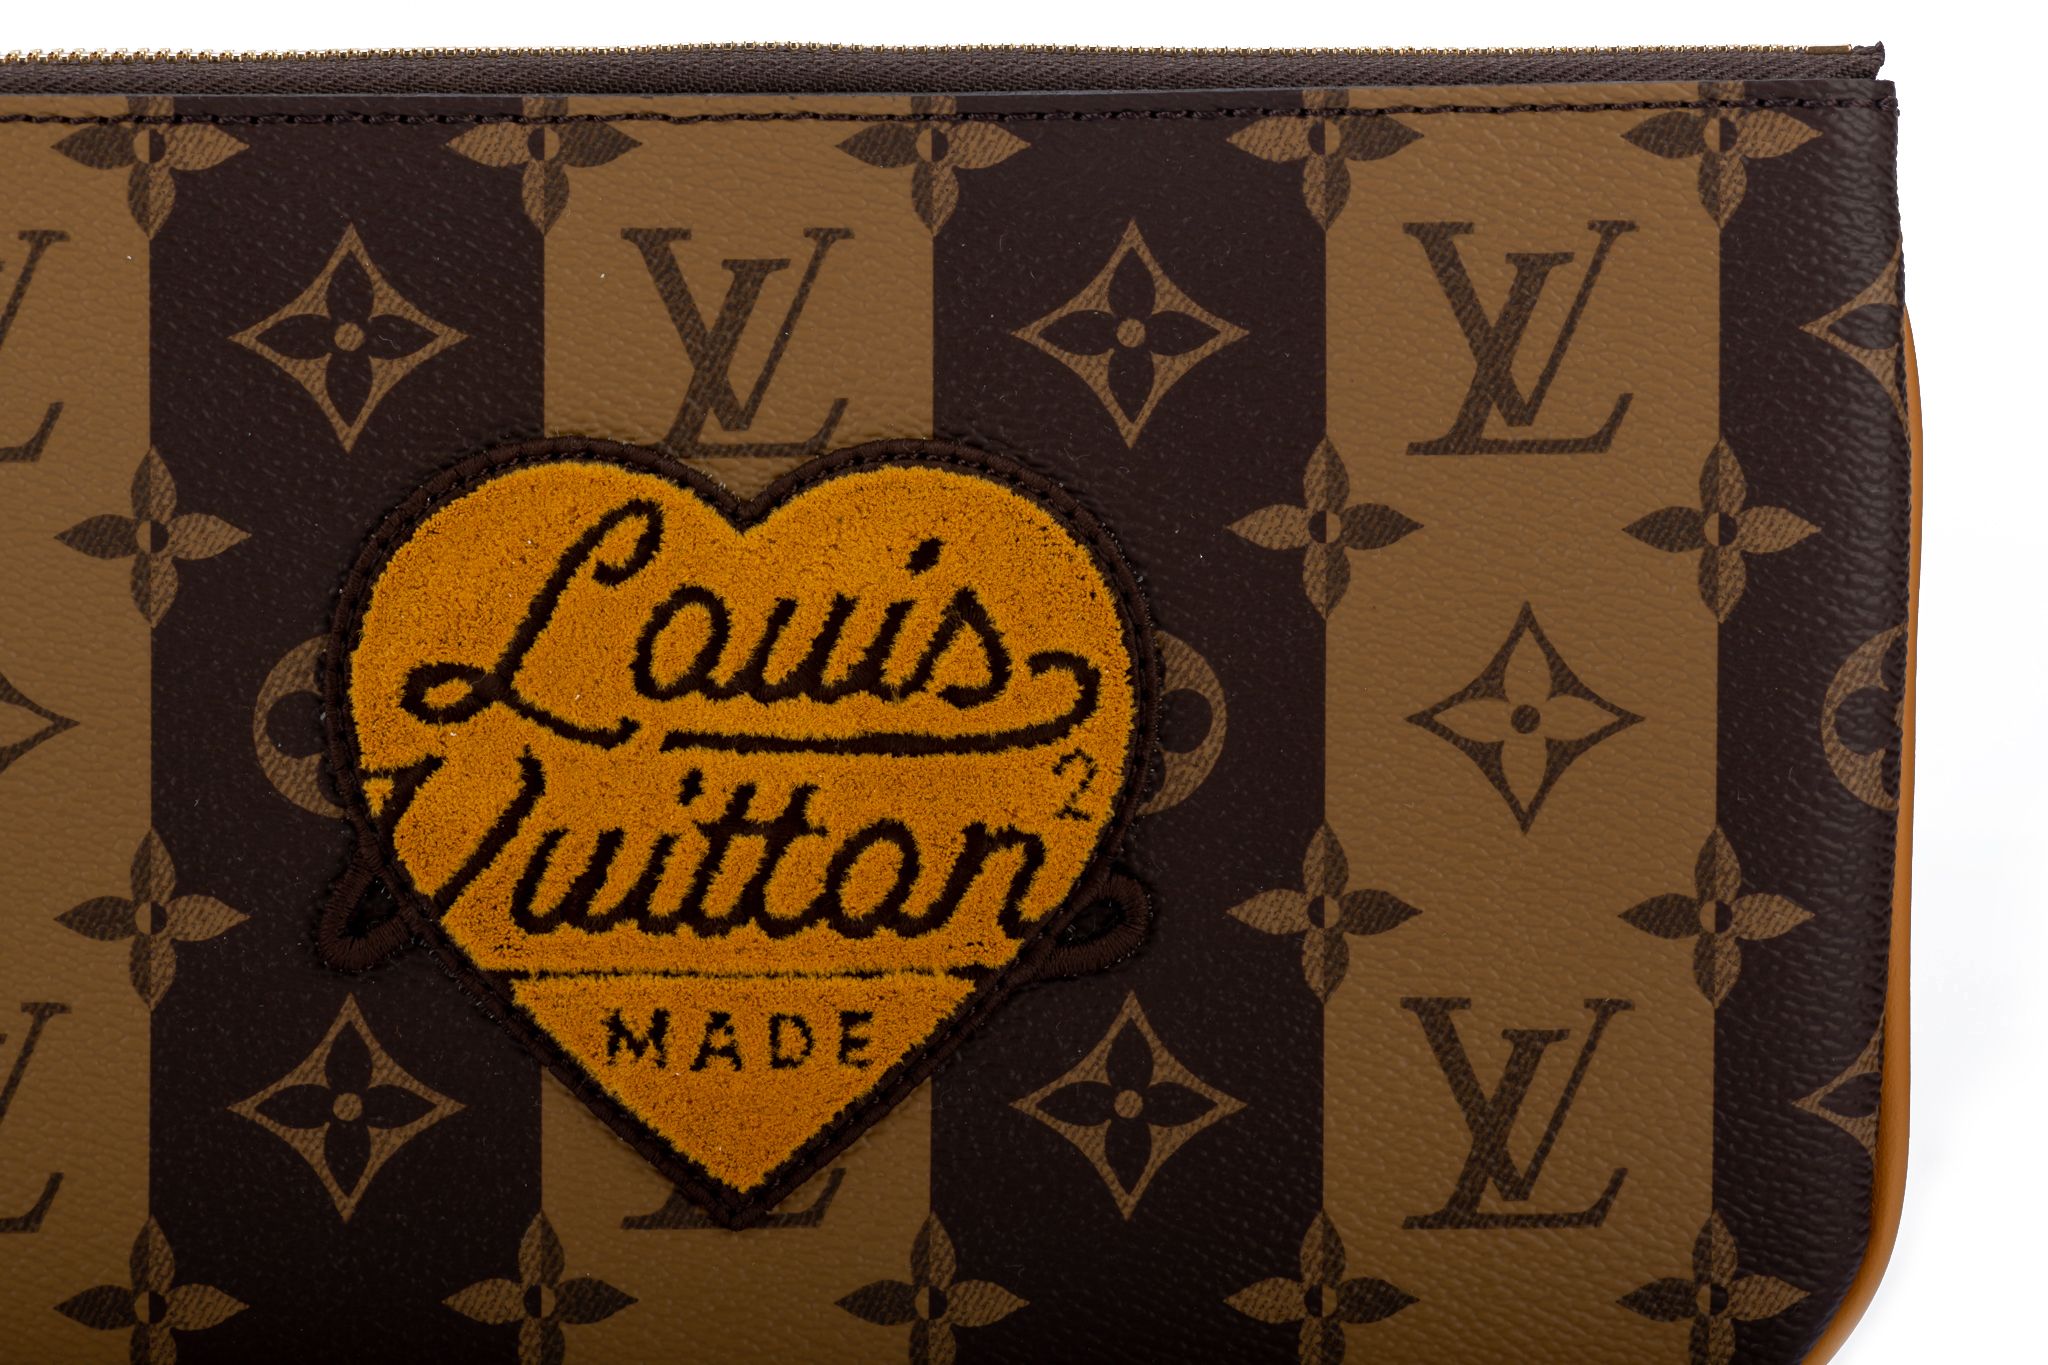 Louis Vuitton Abloh x Nigo Multi Pochette Nib